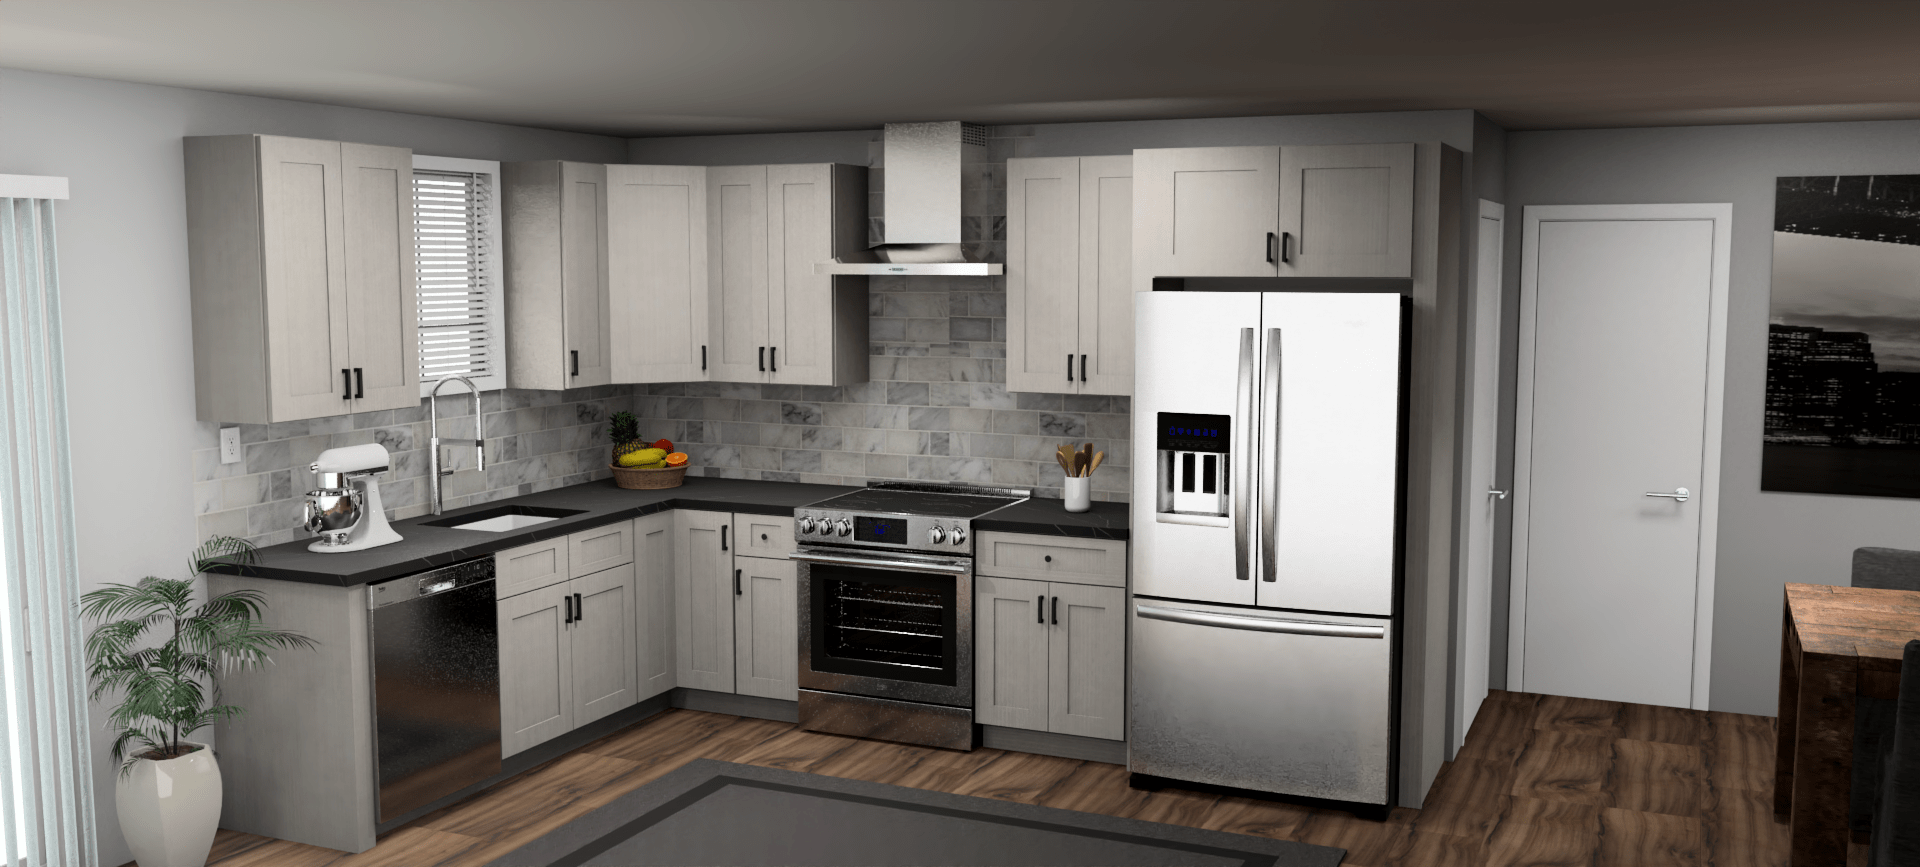 Fabuwood Allure Onyx Horizon 8 x 12 L Shaped Kitchen Main Layout Photo